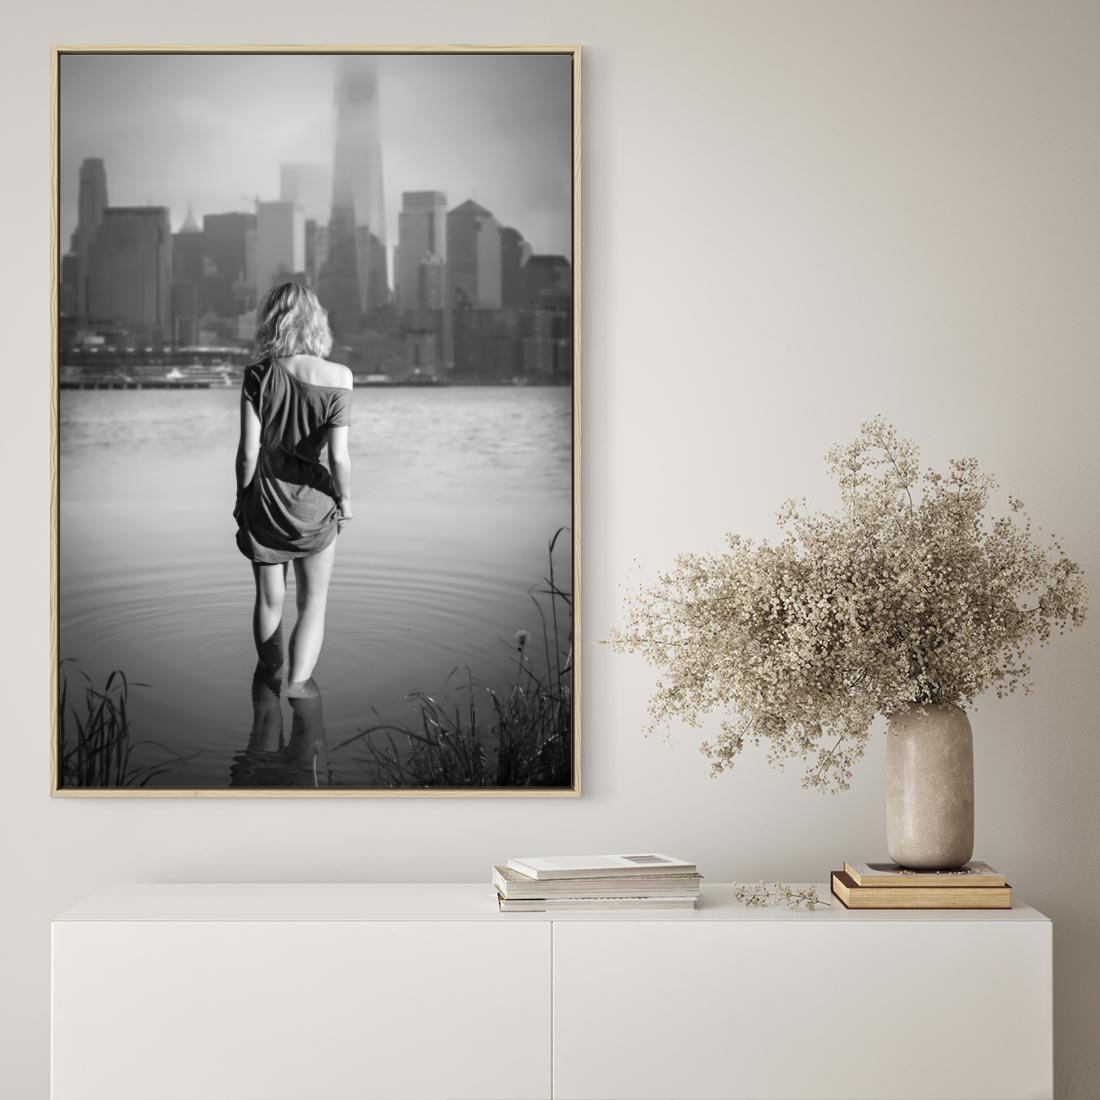 Obraz w ramie 50x70 - Kapiel w Mieście - czarno białe zdjęcie, kobieta wchodzi do wody - rama drewno